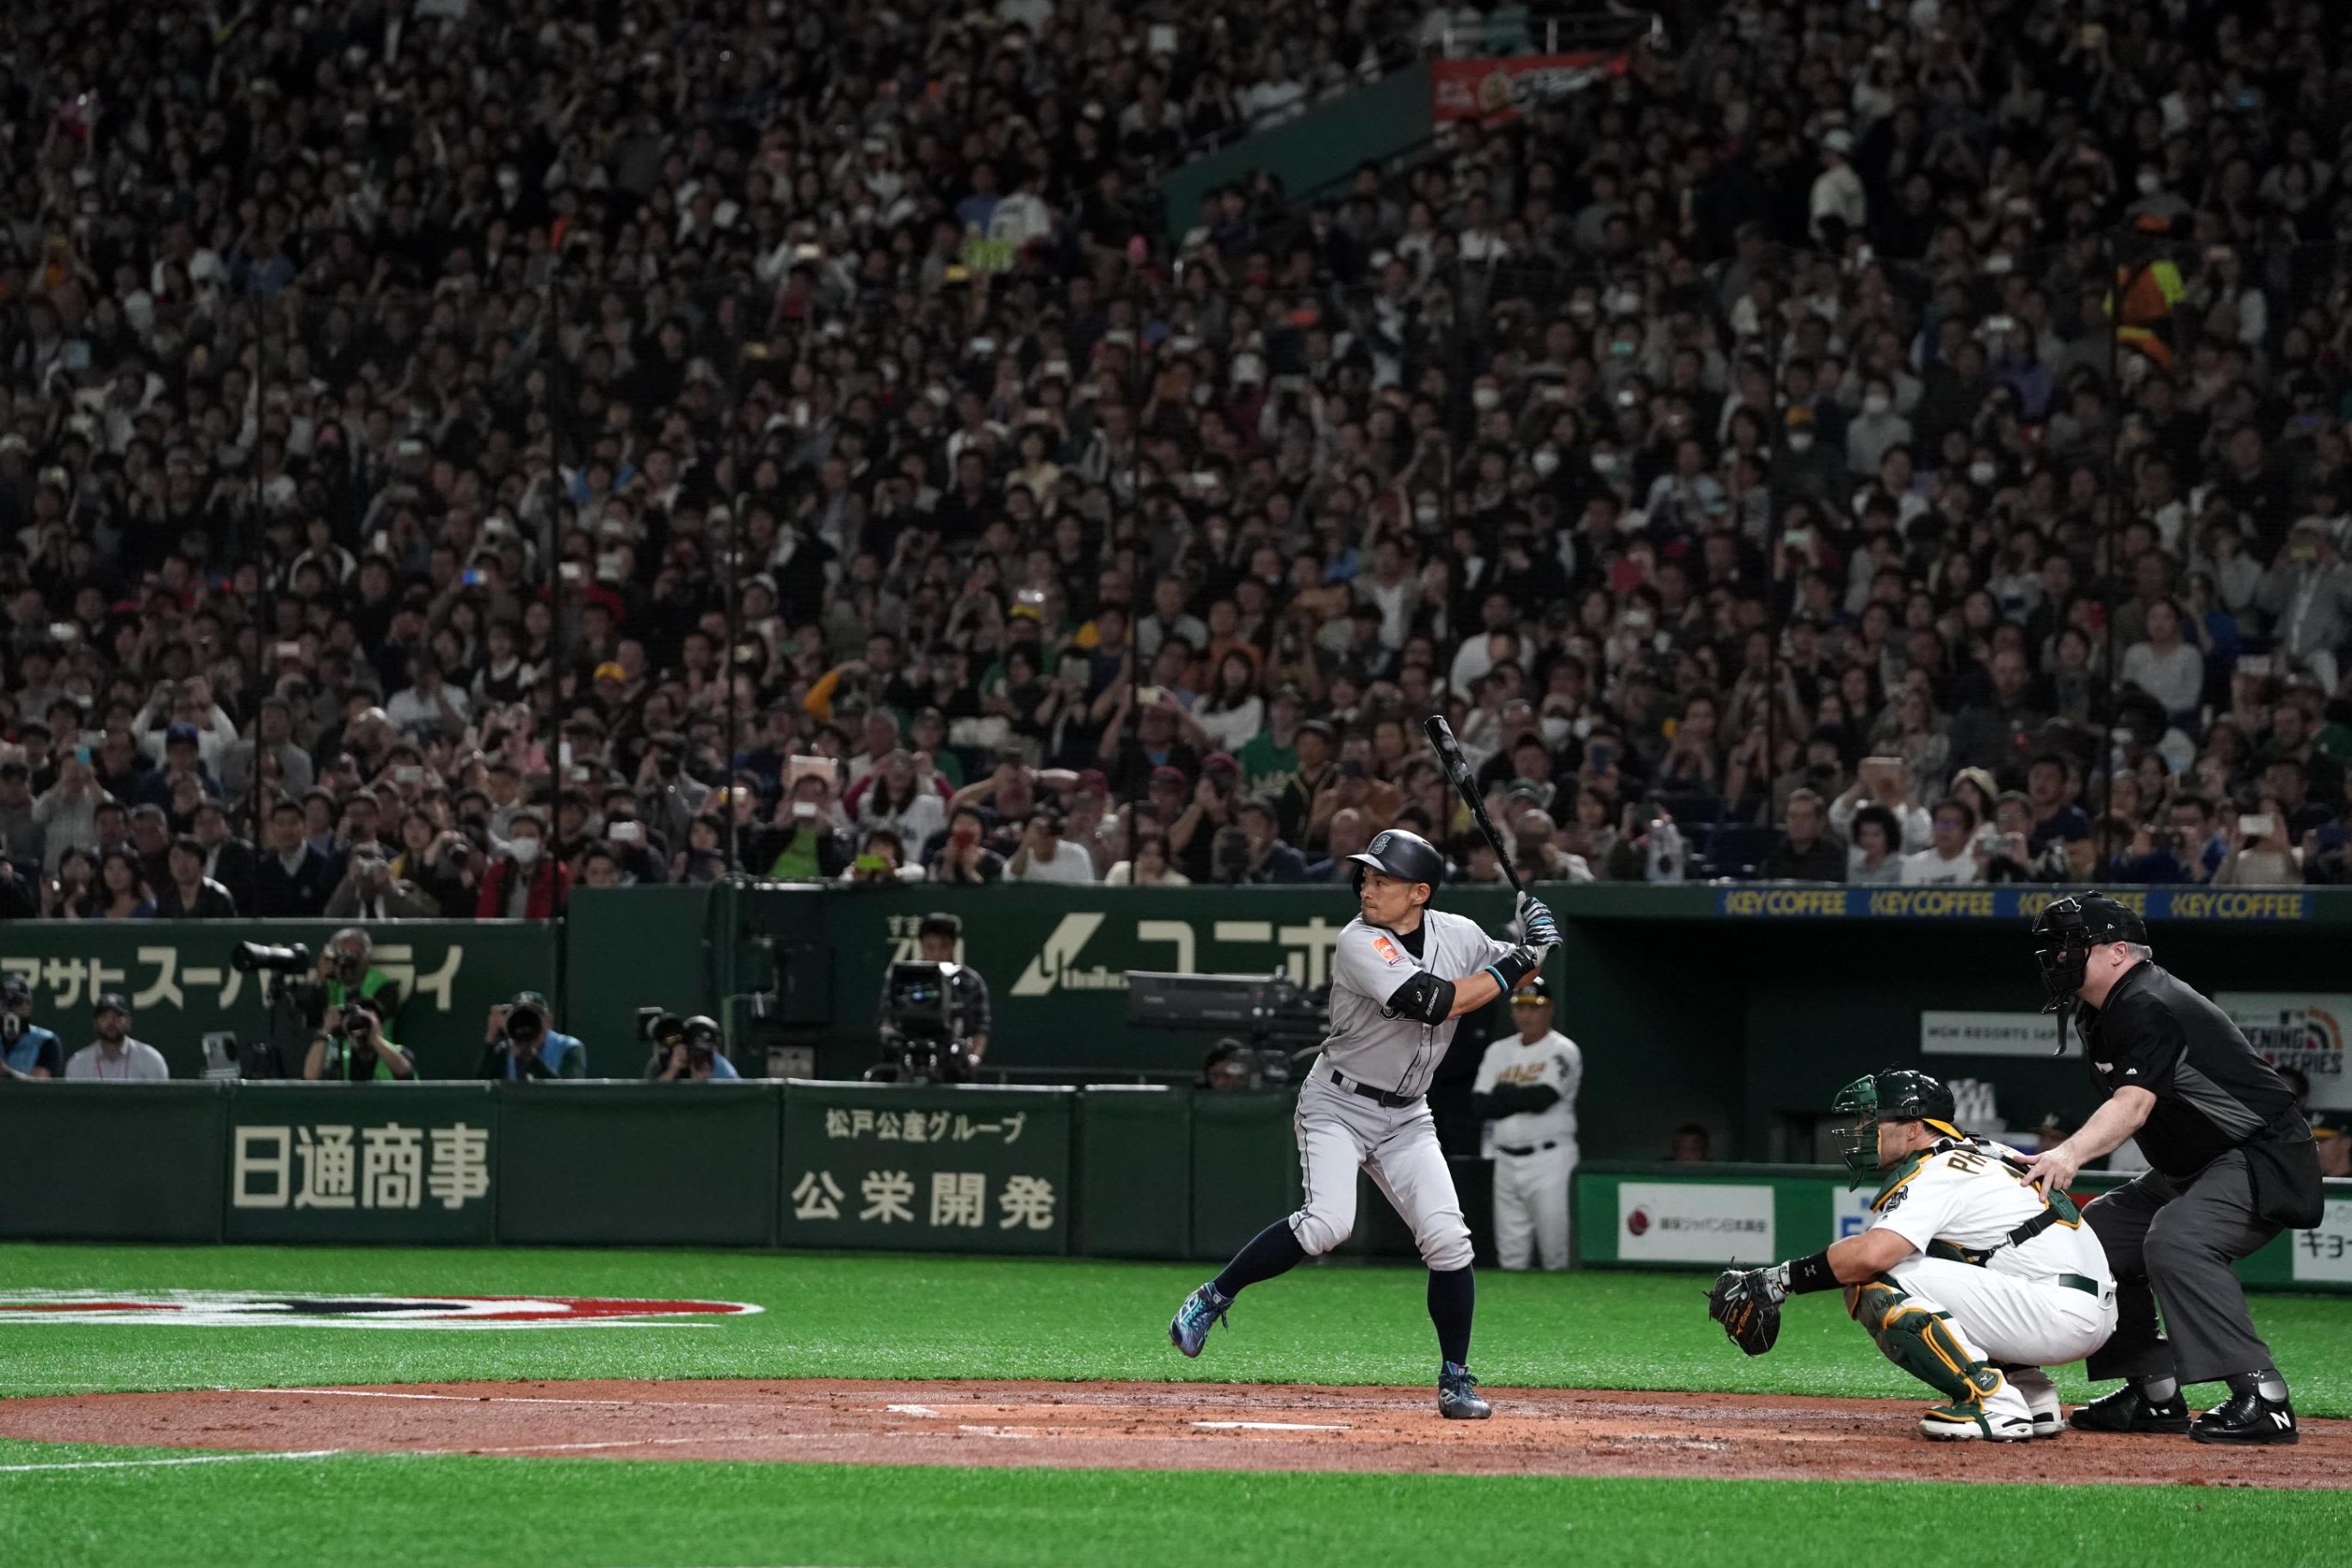 Ichiro Suzuki honored with collage showing 1st 3,000 hits